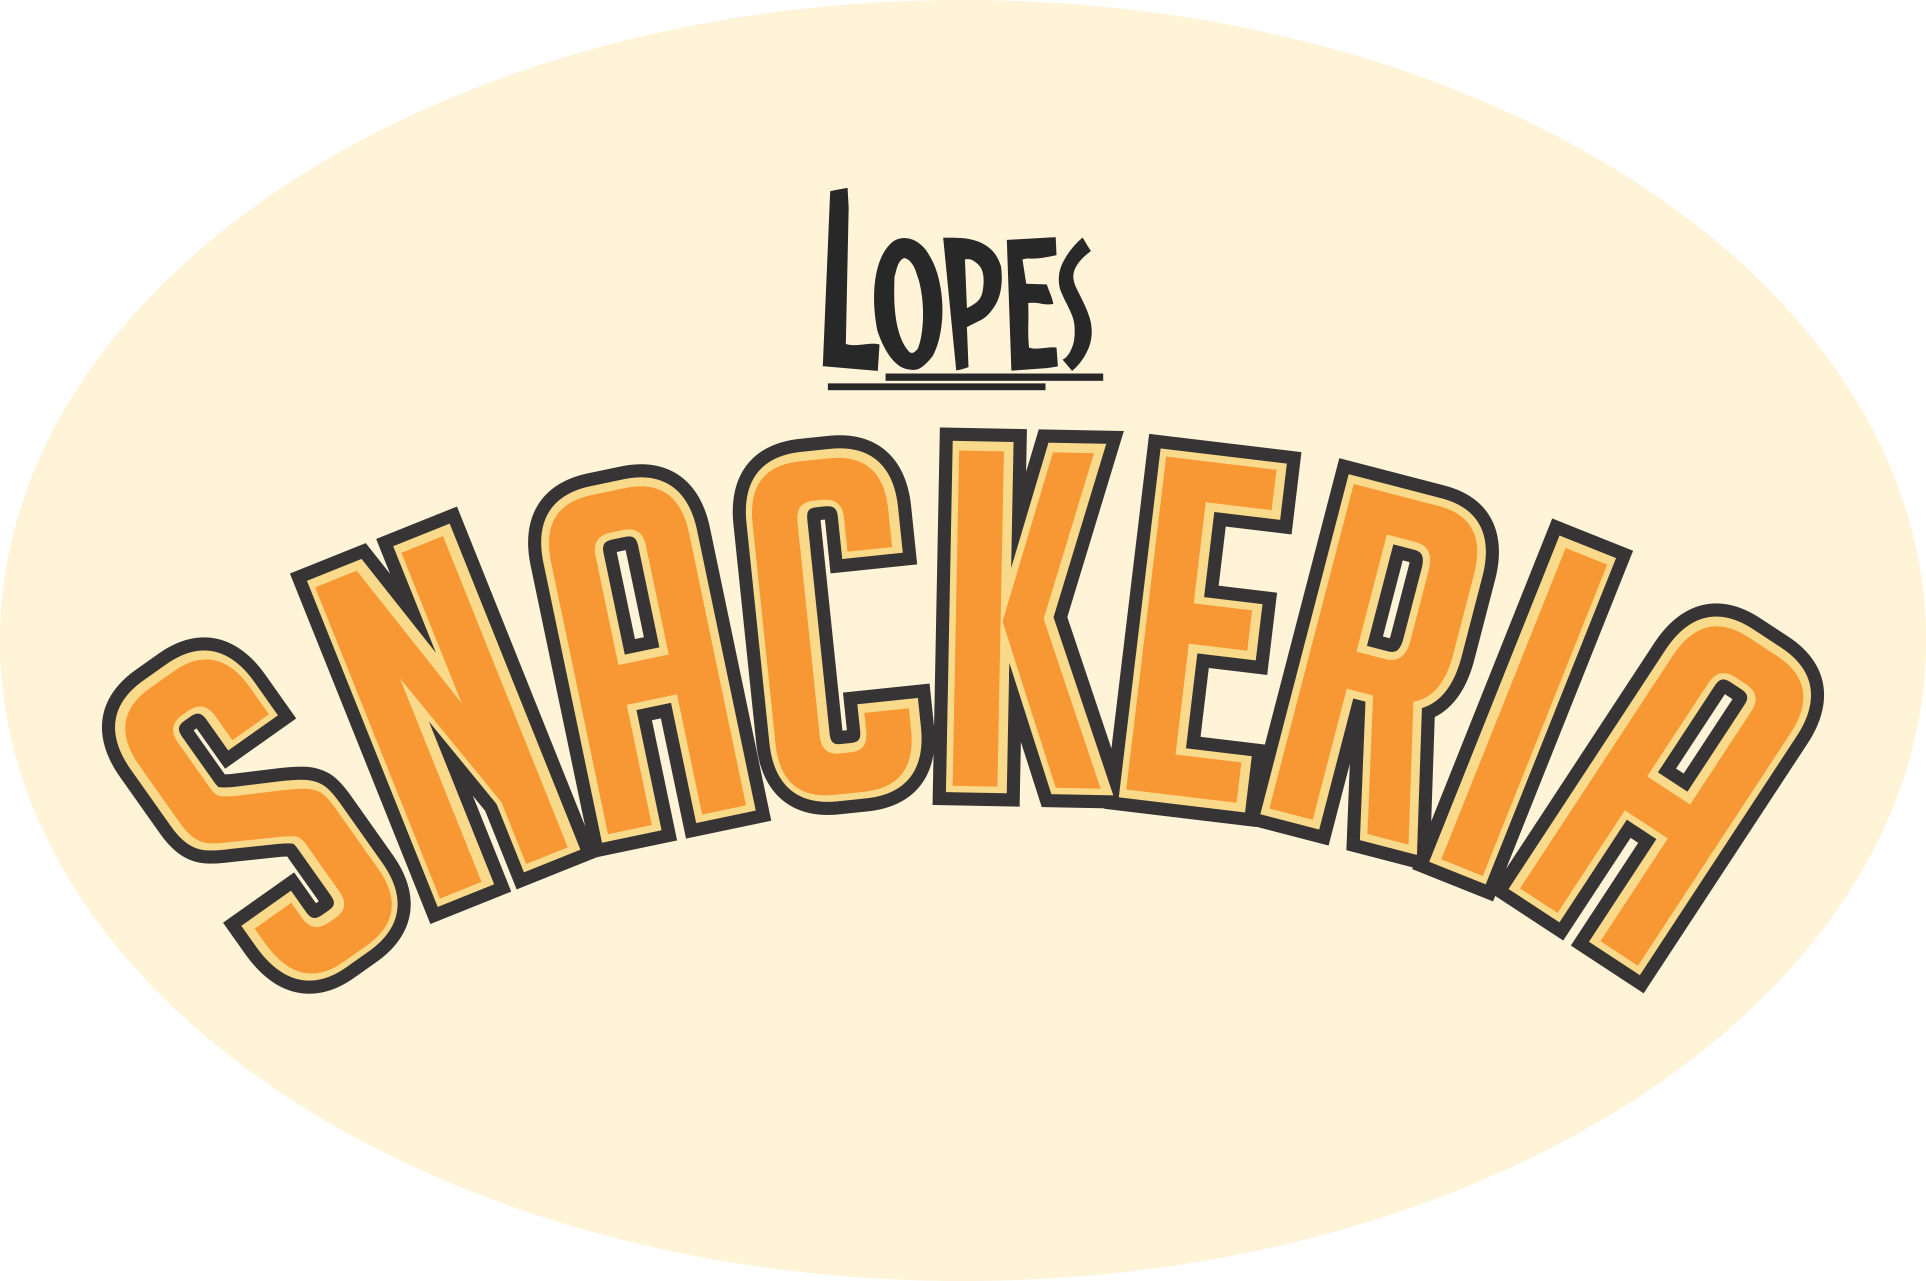 Lopes Snackeria